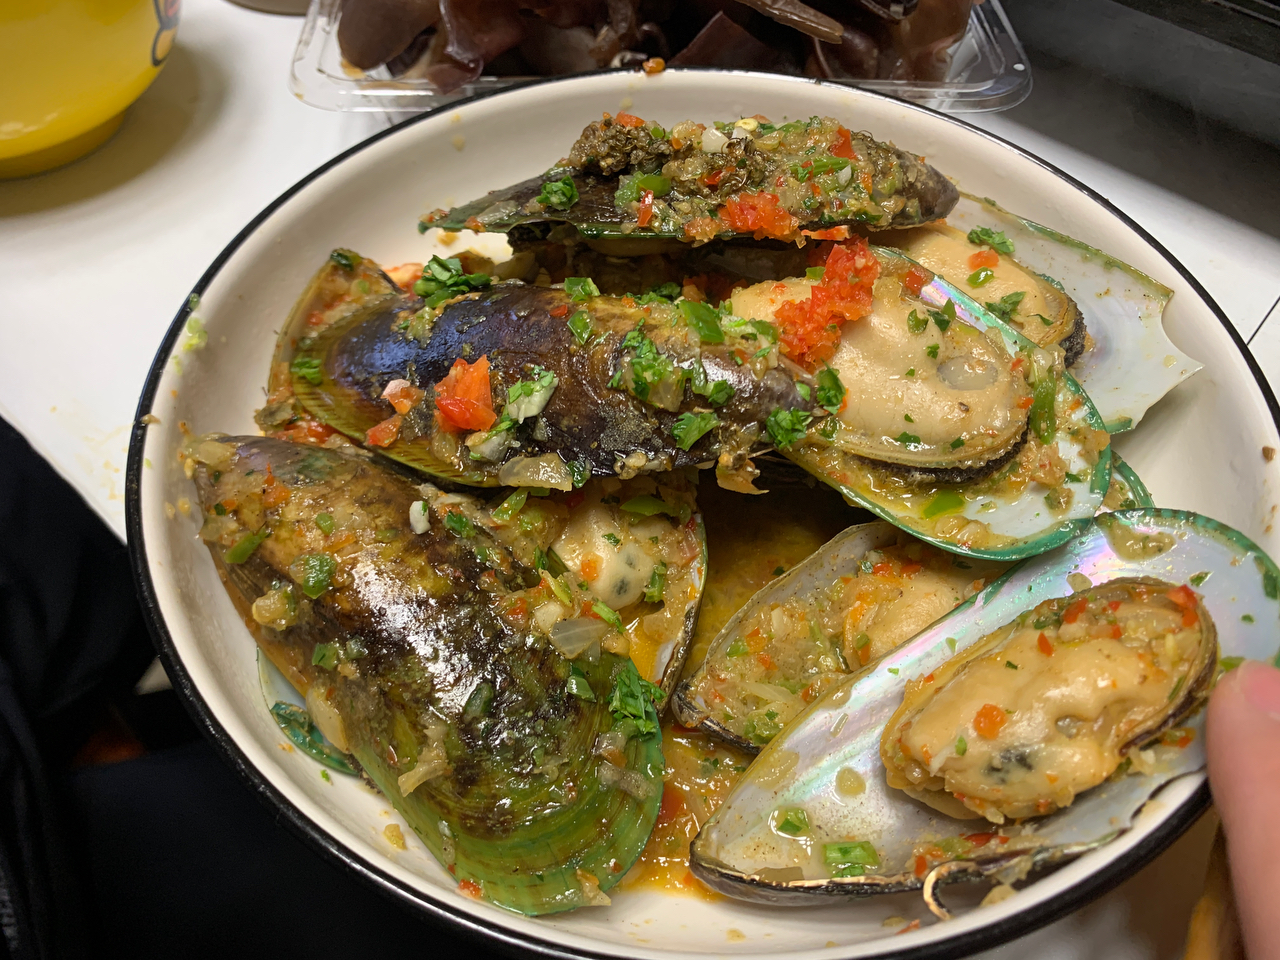 新西兰青口贝mussel（最原始最鲜美的做法）超级简单/人人都可以成为别人羡慕的大厨，超详细步骤图，铸铁锅